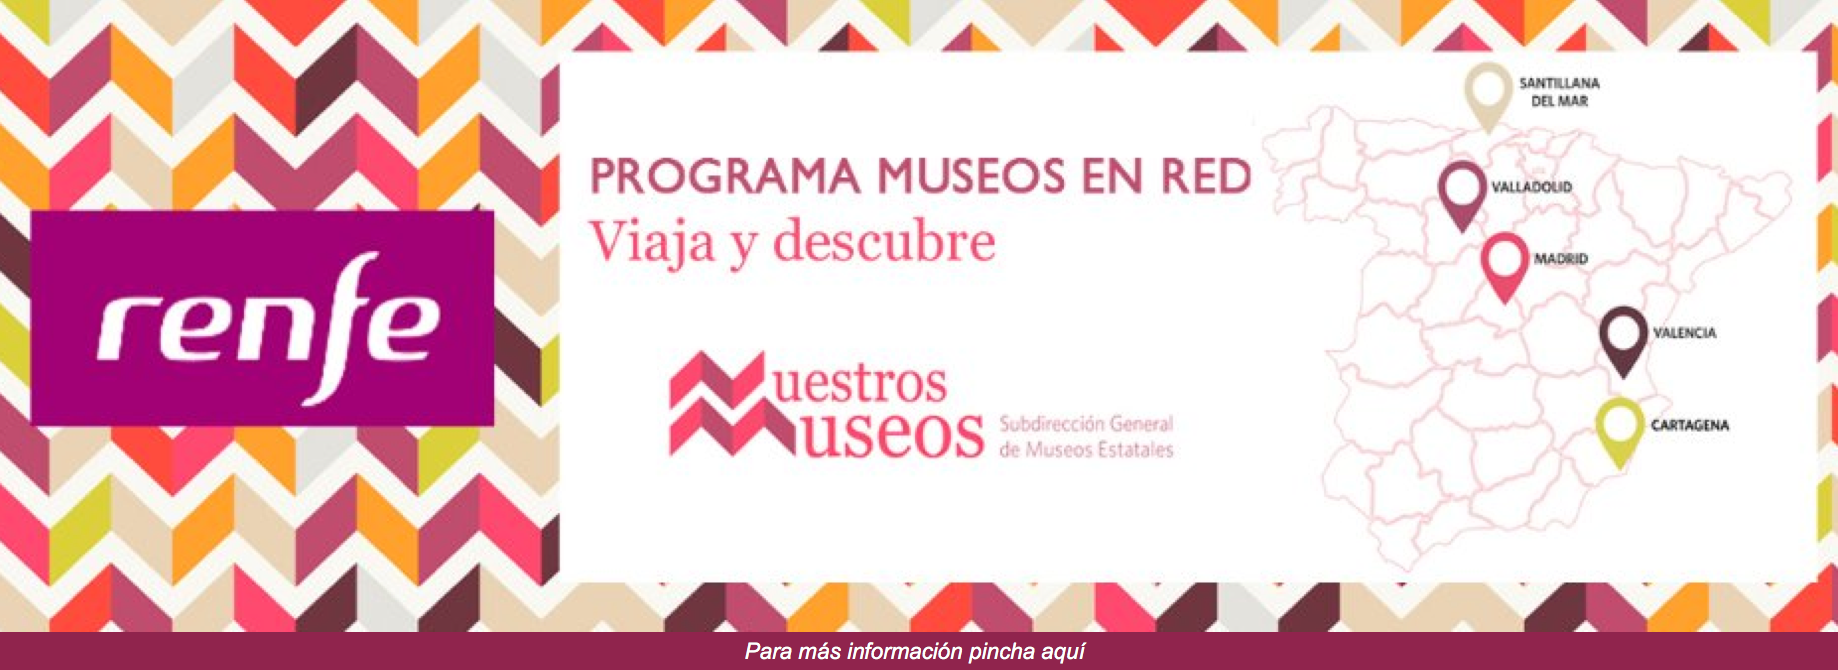 Programa Museos en Red. 